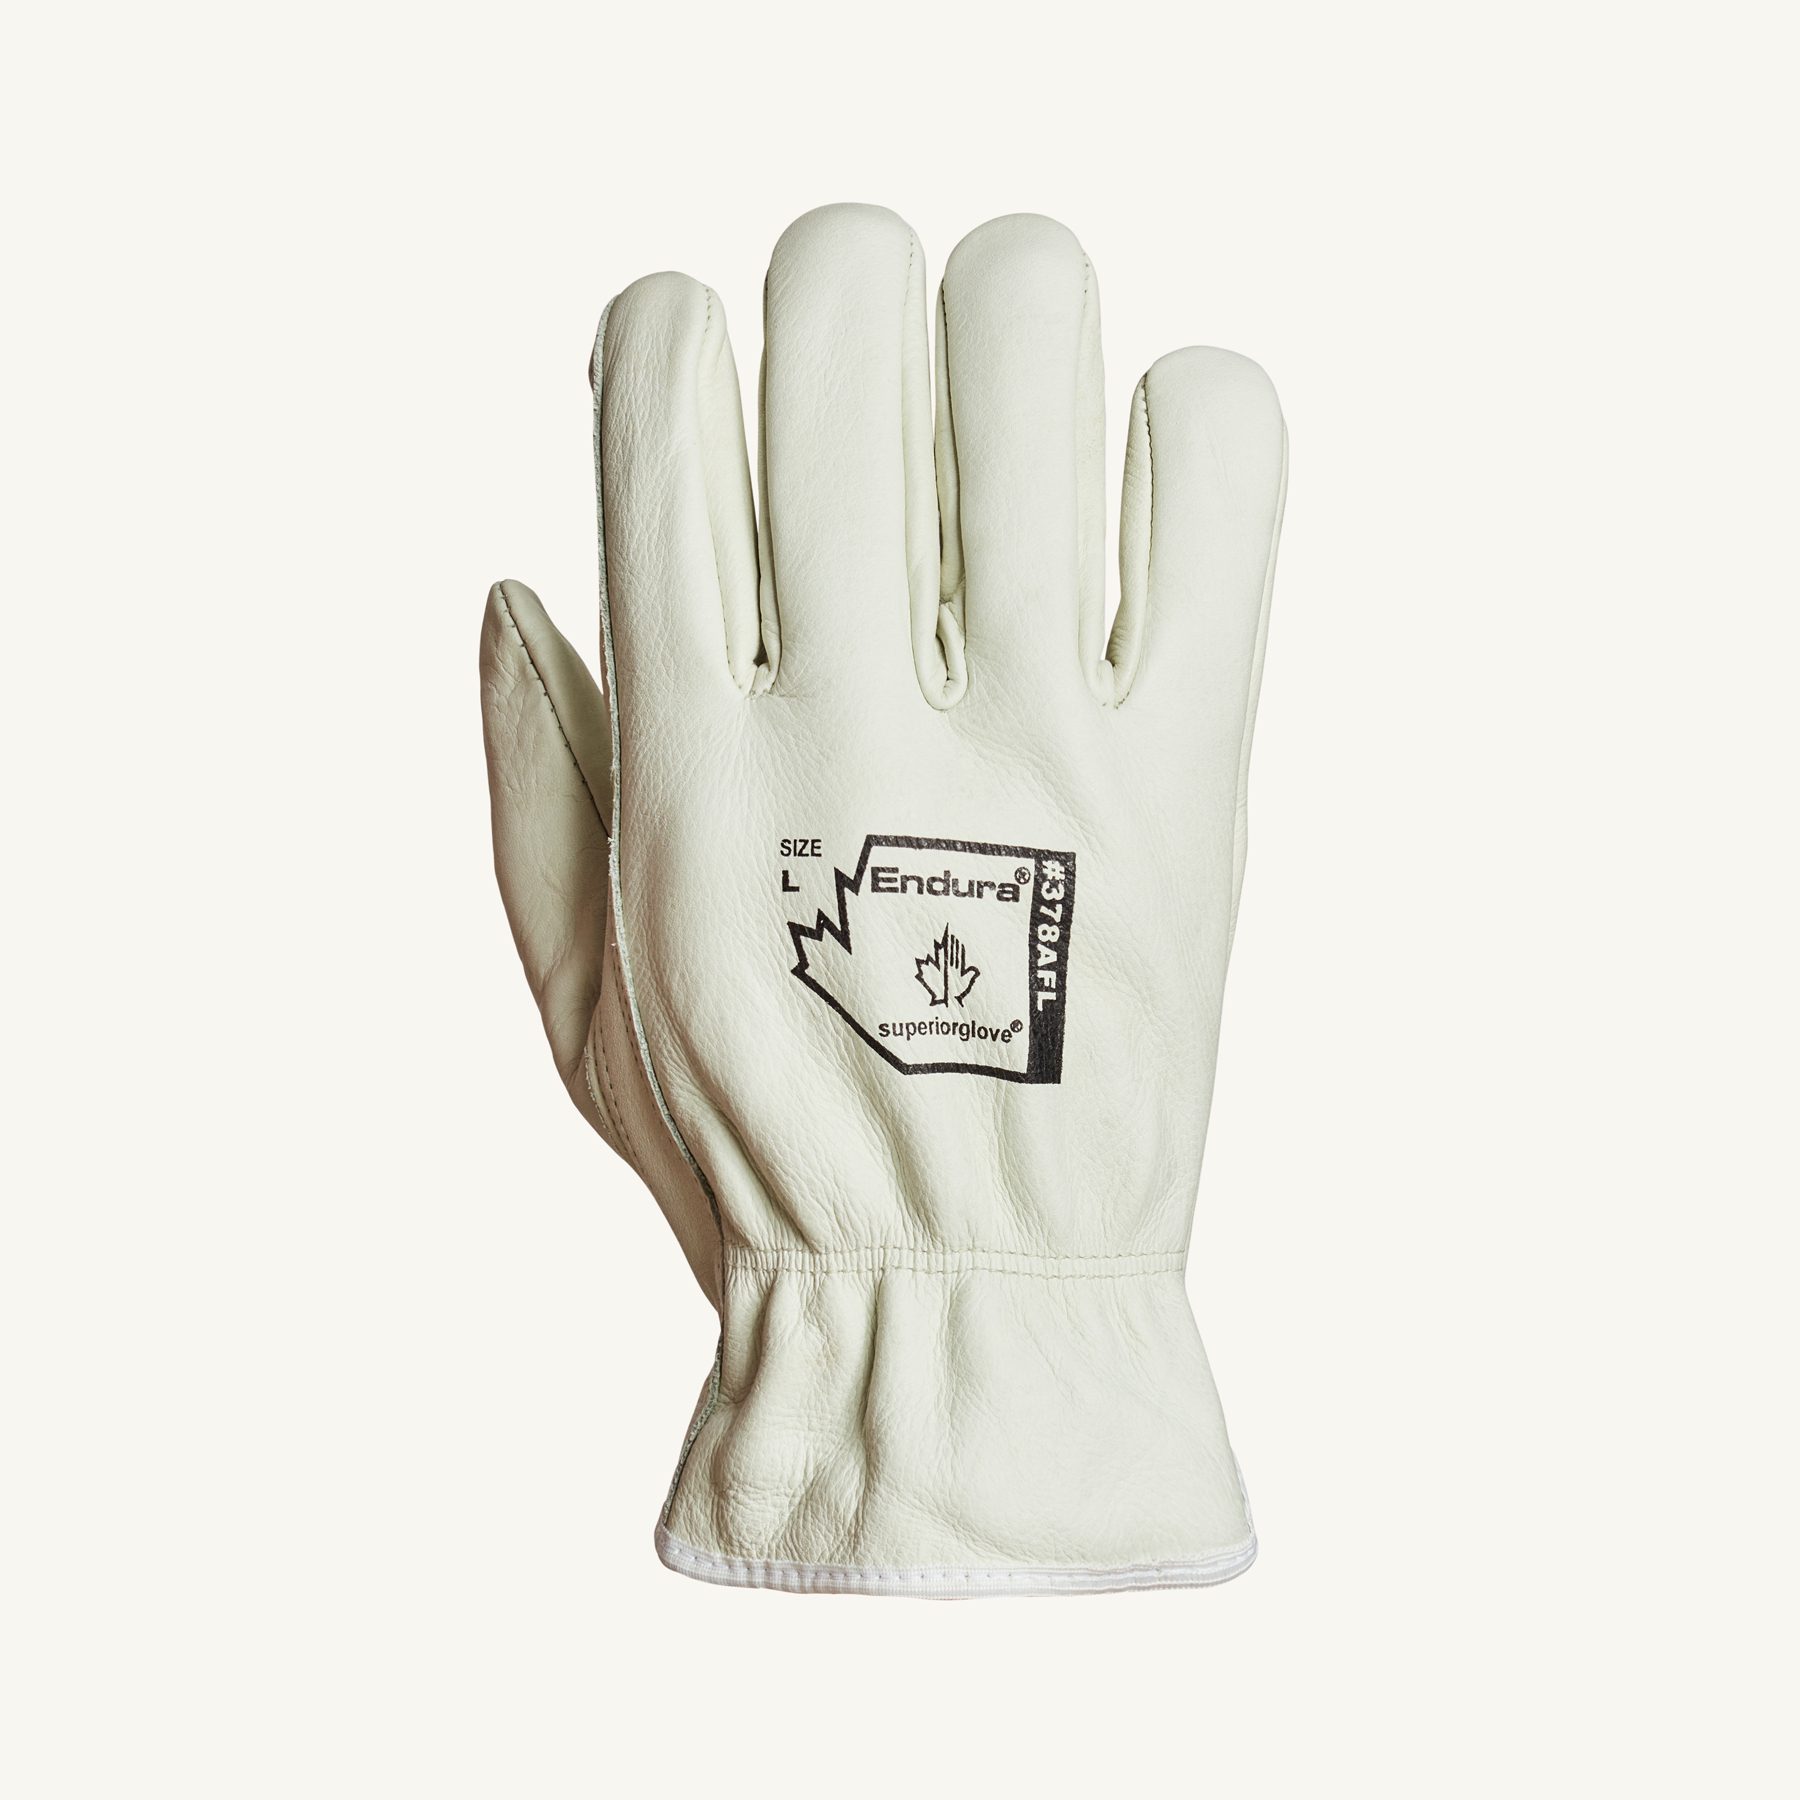 Seis guantes de piel elegantes para llevar en invierno